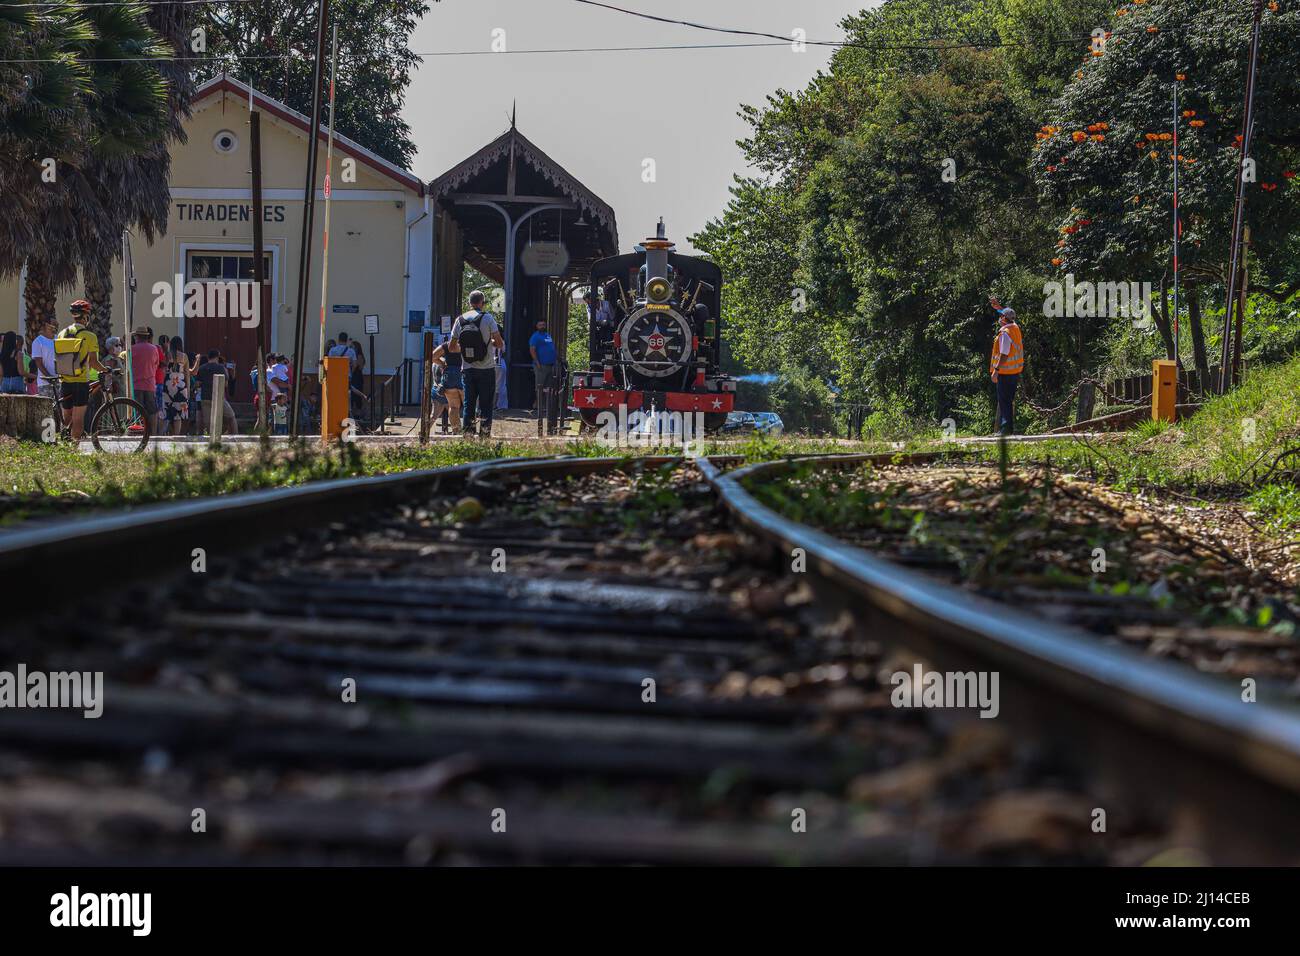 Train station tiradentes minas gerais hi-res stock photography and images -  Alamy